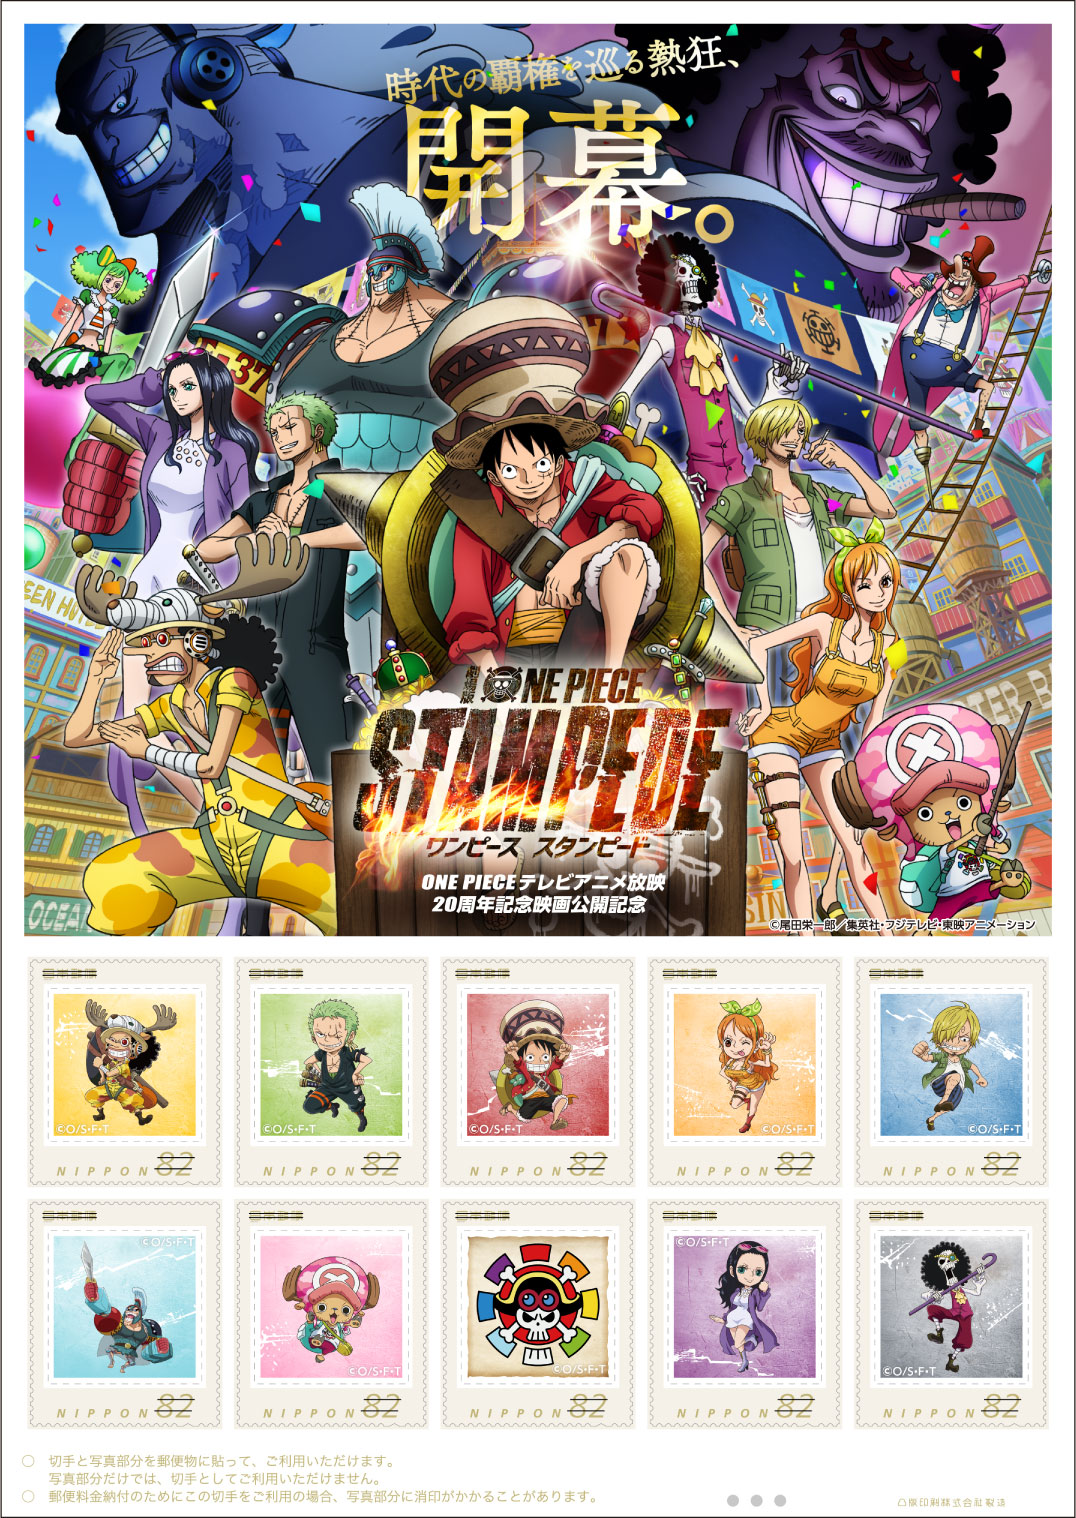 19年度 One Pieceテレビアニメ放映周年記念映画 One Piece Stampede 公開記念 郵便なんでも相談室